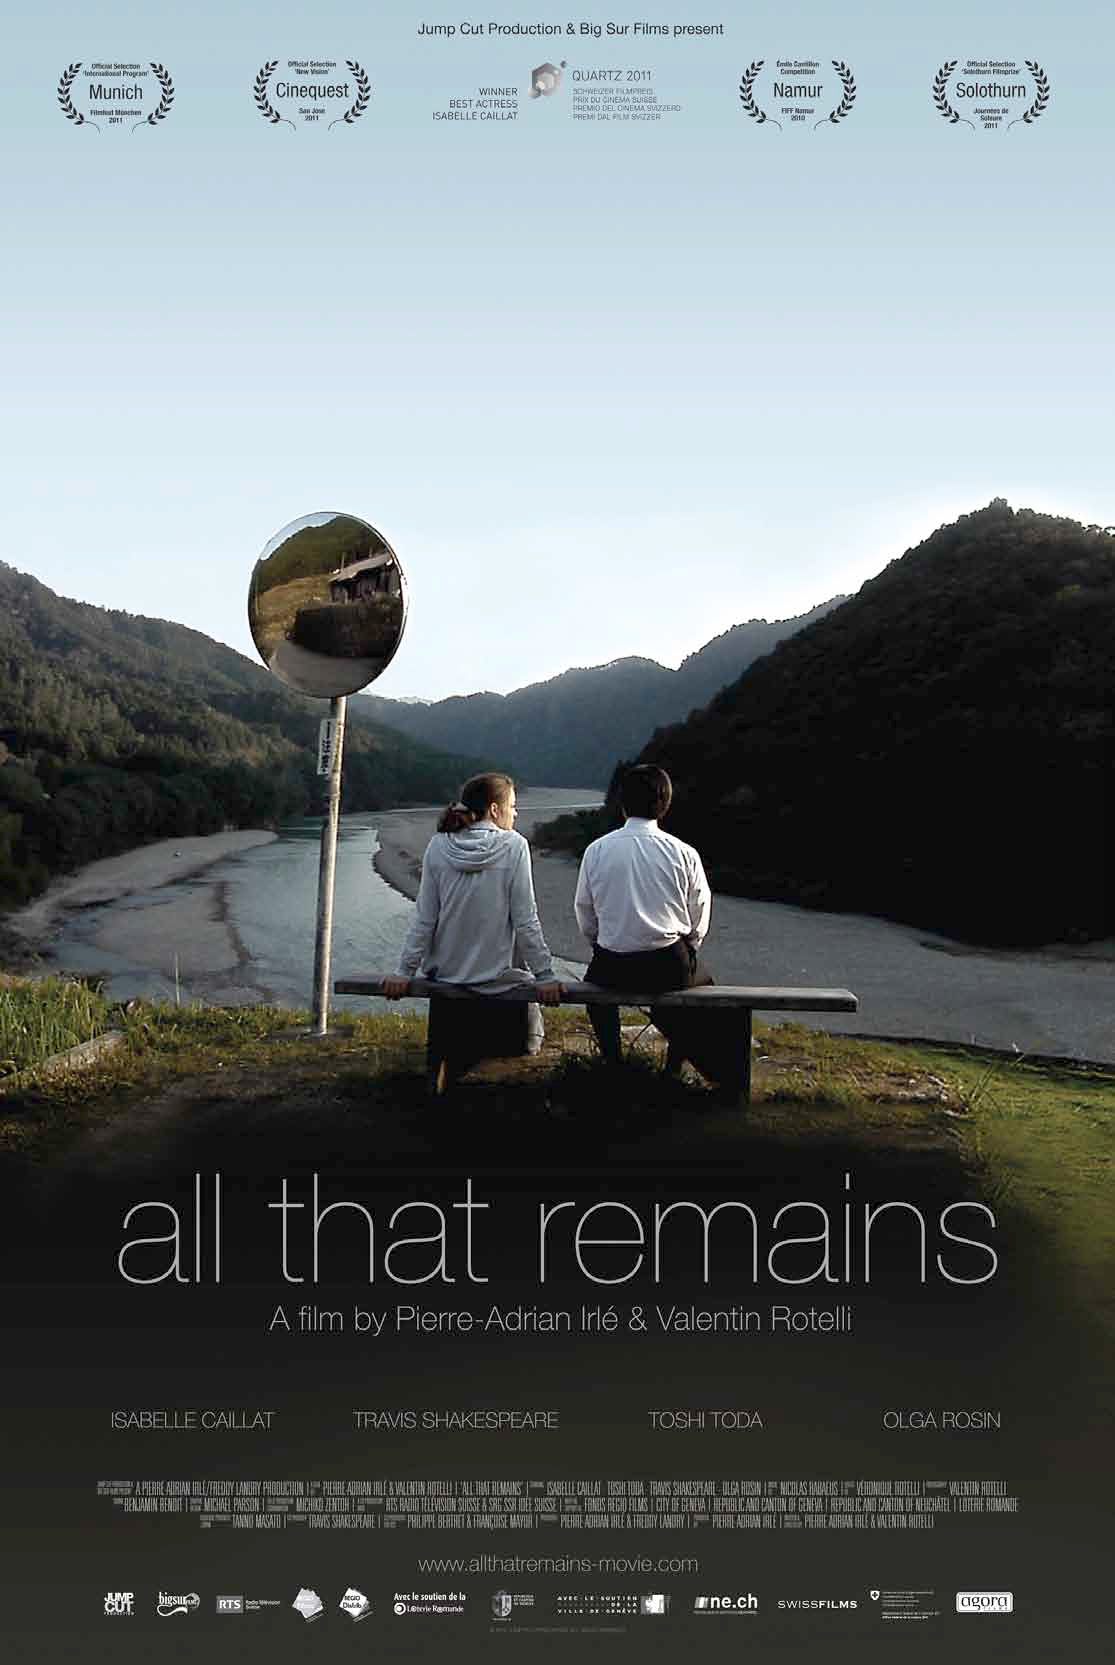 Affiche de "All that remains", un film de Pierre-Adrian Irlé et Valentin Rotelli [RTS - Jump Cut Production, Big Sur Films]